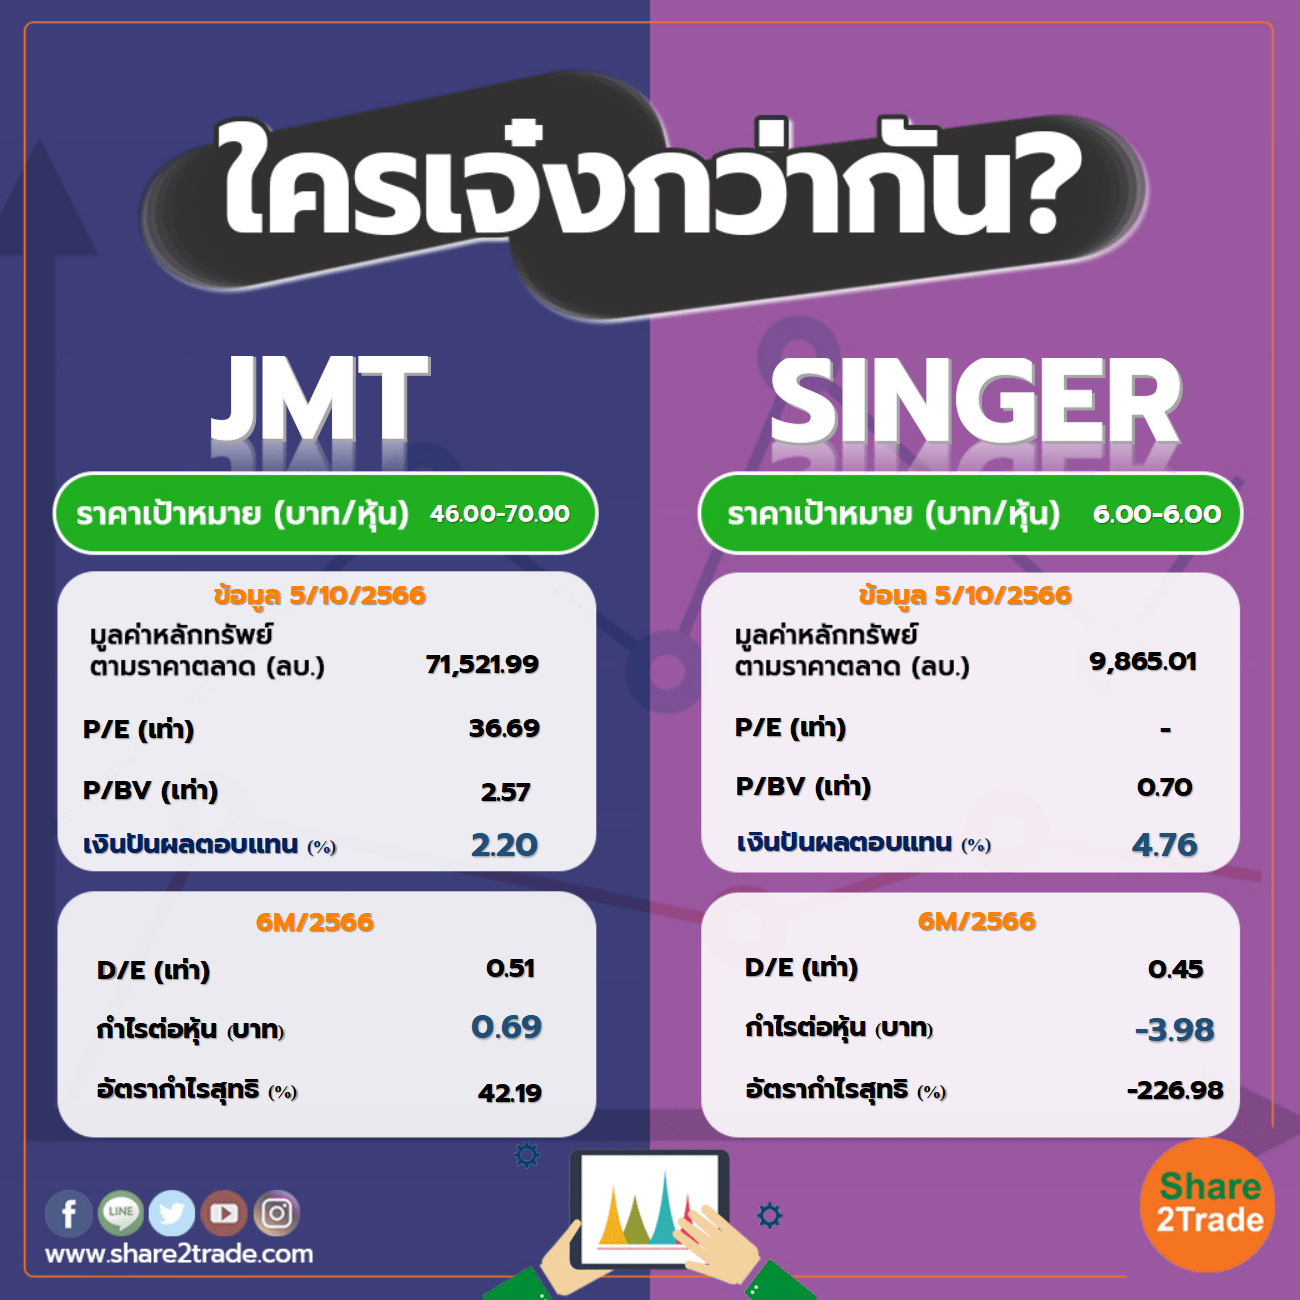 ใครเจ๋งกว่ากัน "JMT" VS "SINGER"